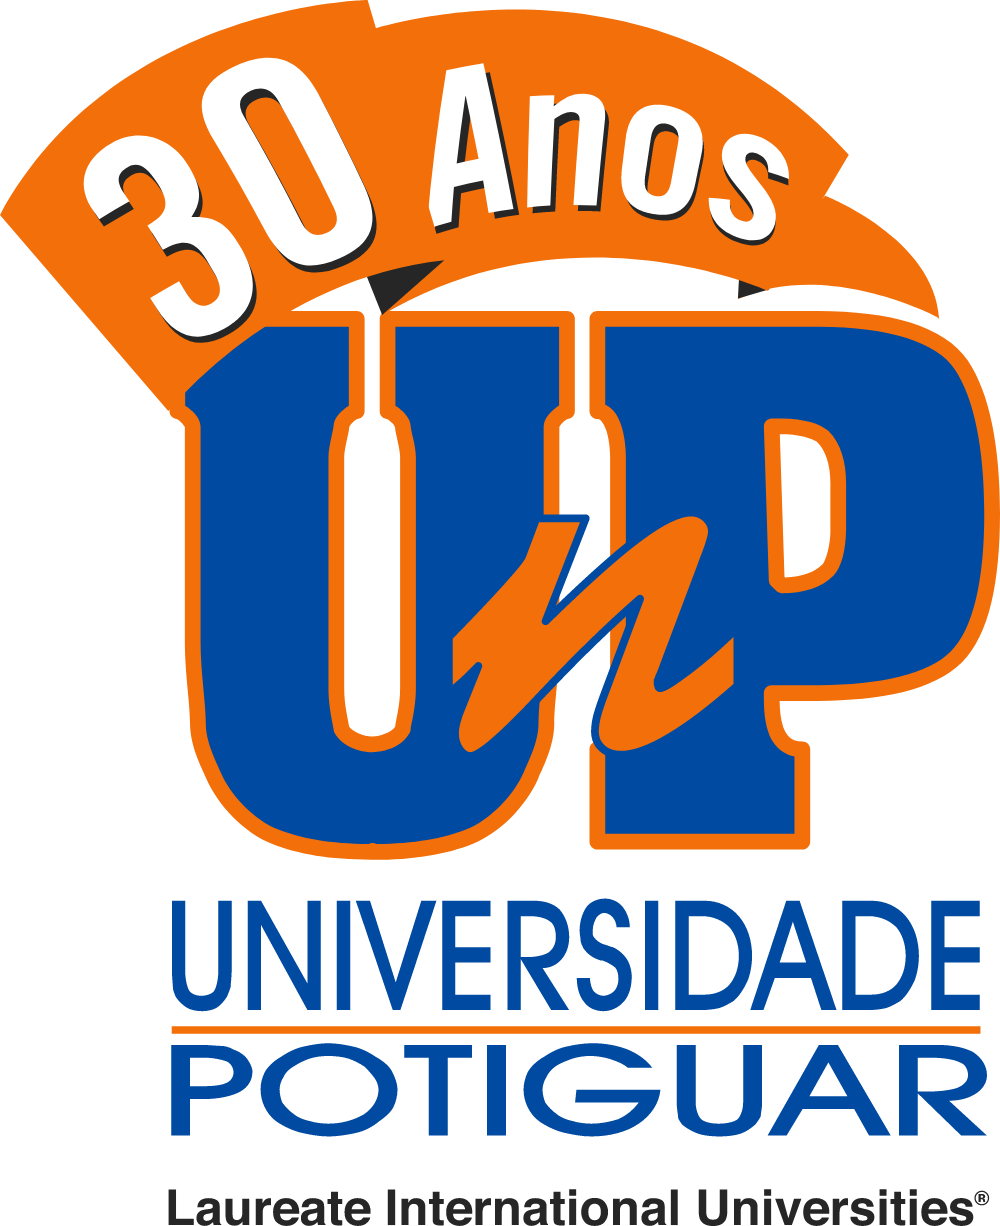 UnP 30 Anos Logo PNG logo